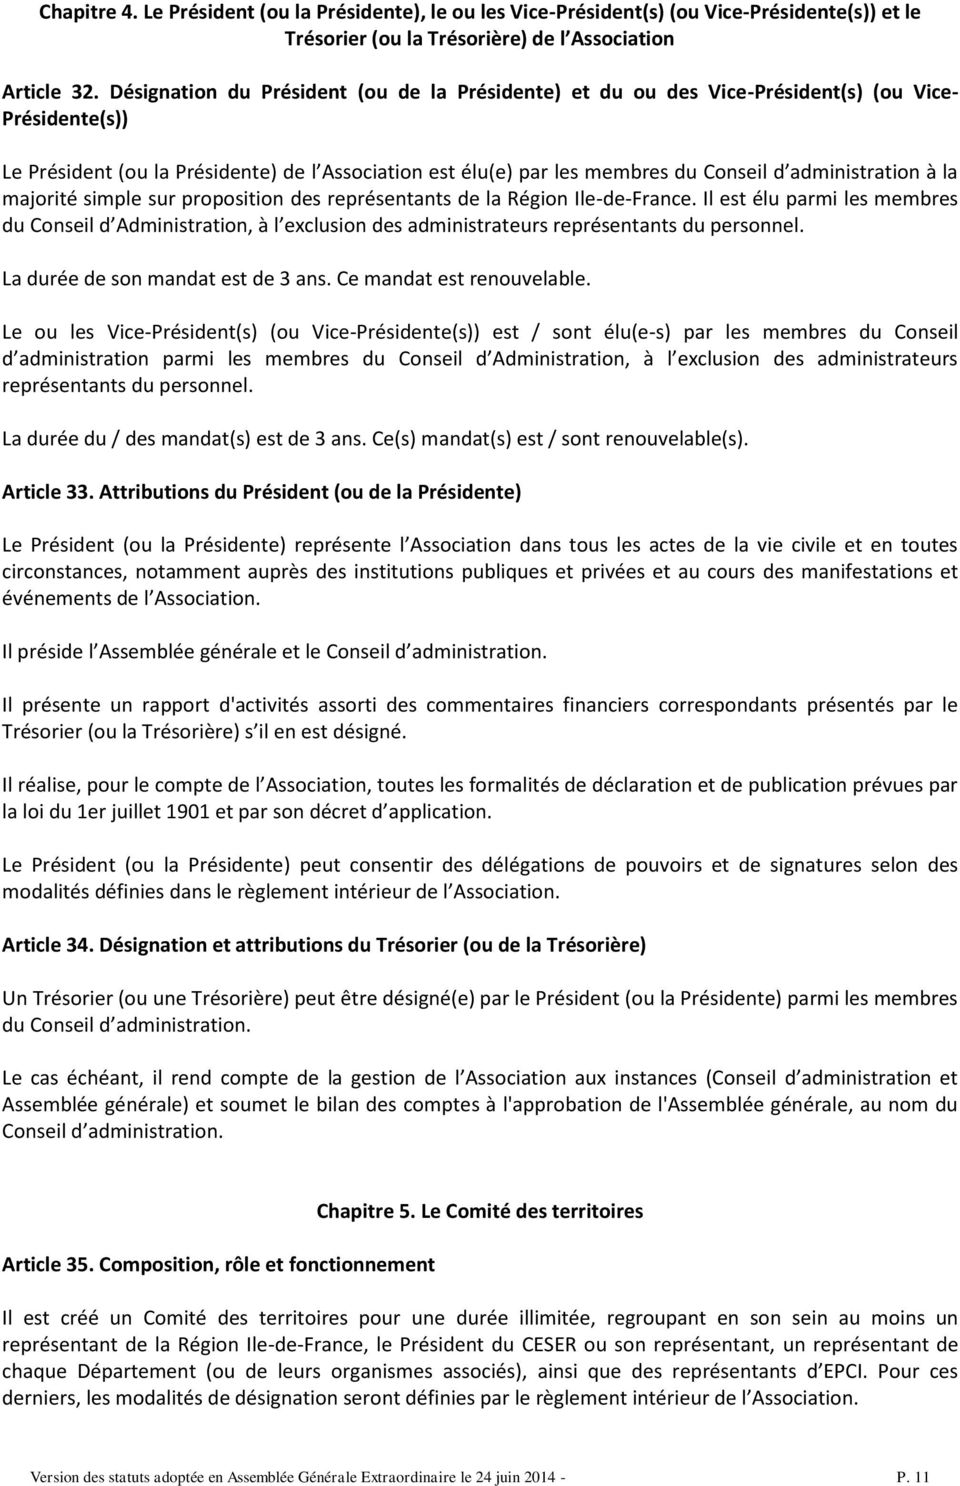 administration à la majorité simple sur proposition des représentants de la Région Ile-de-France.